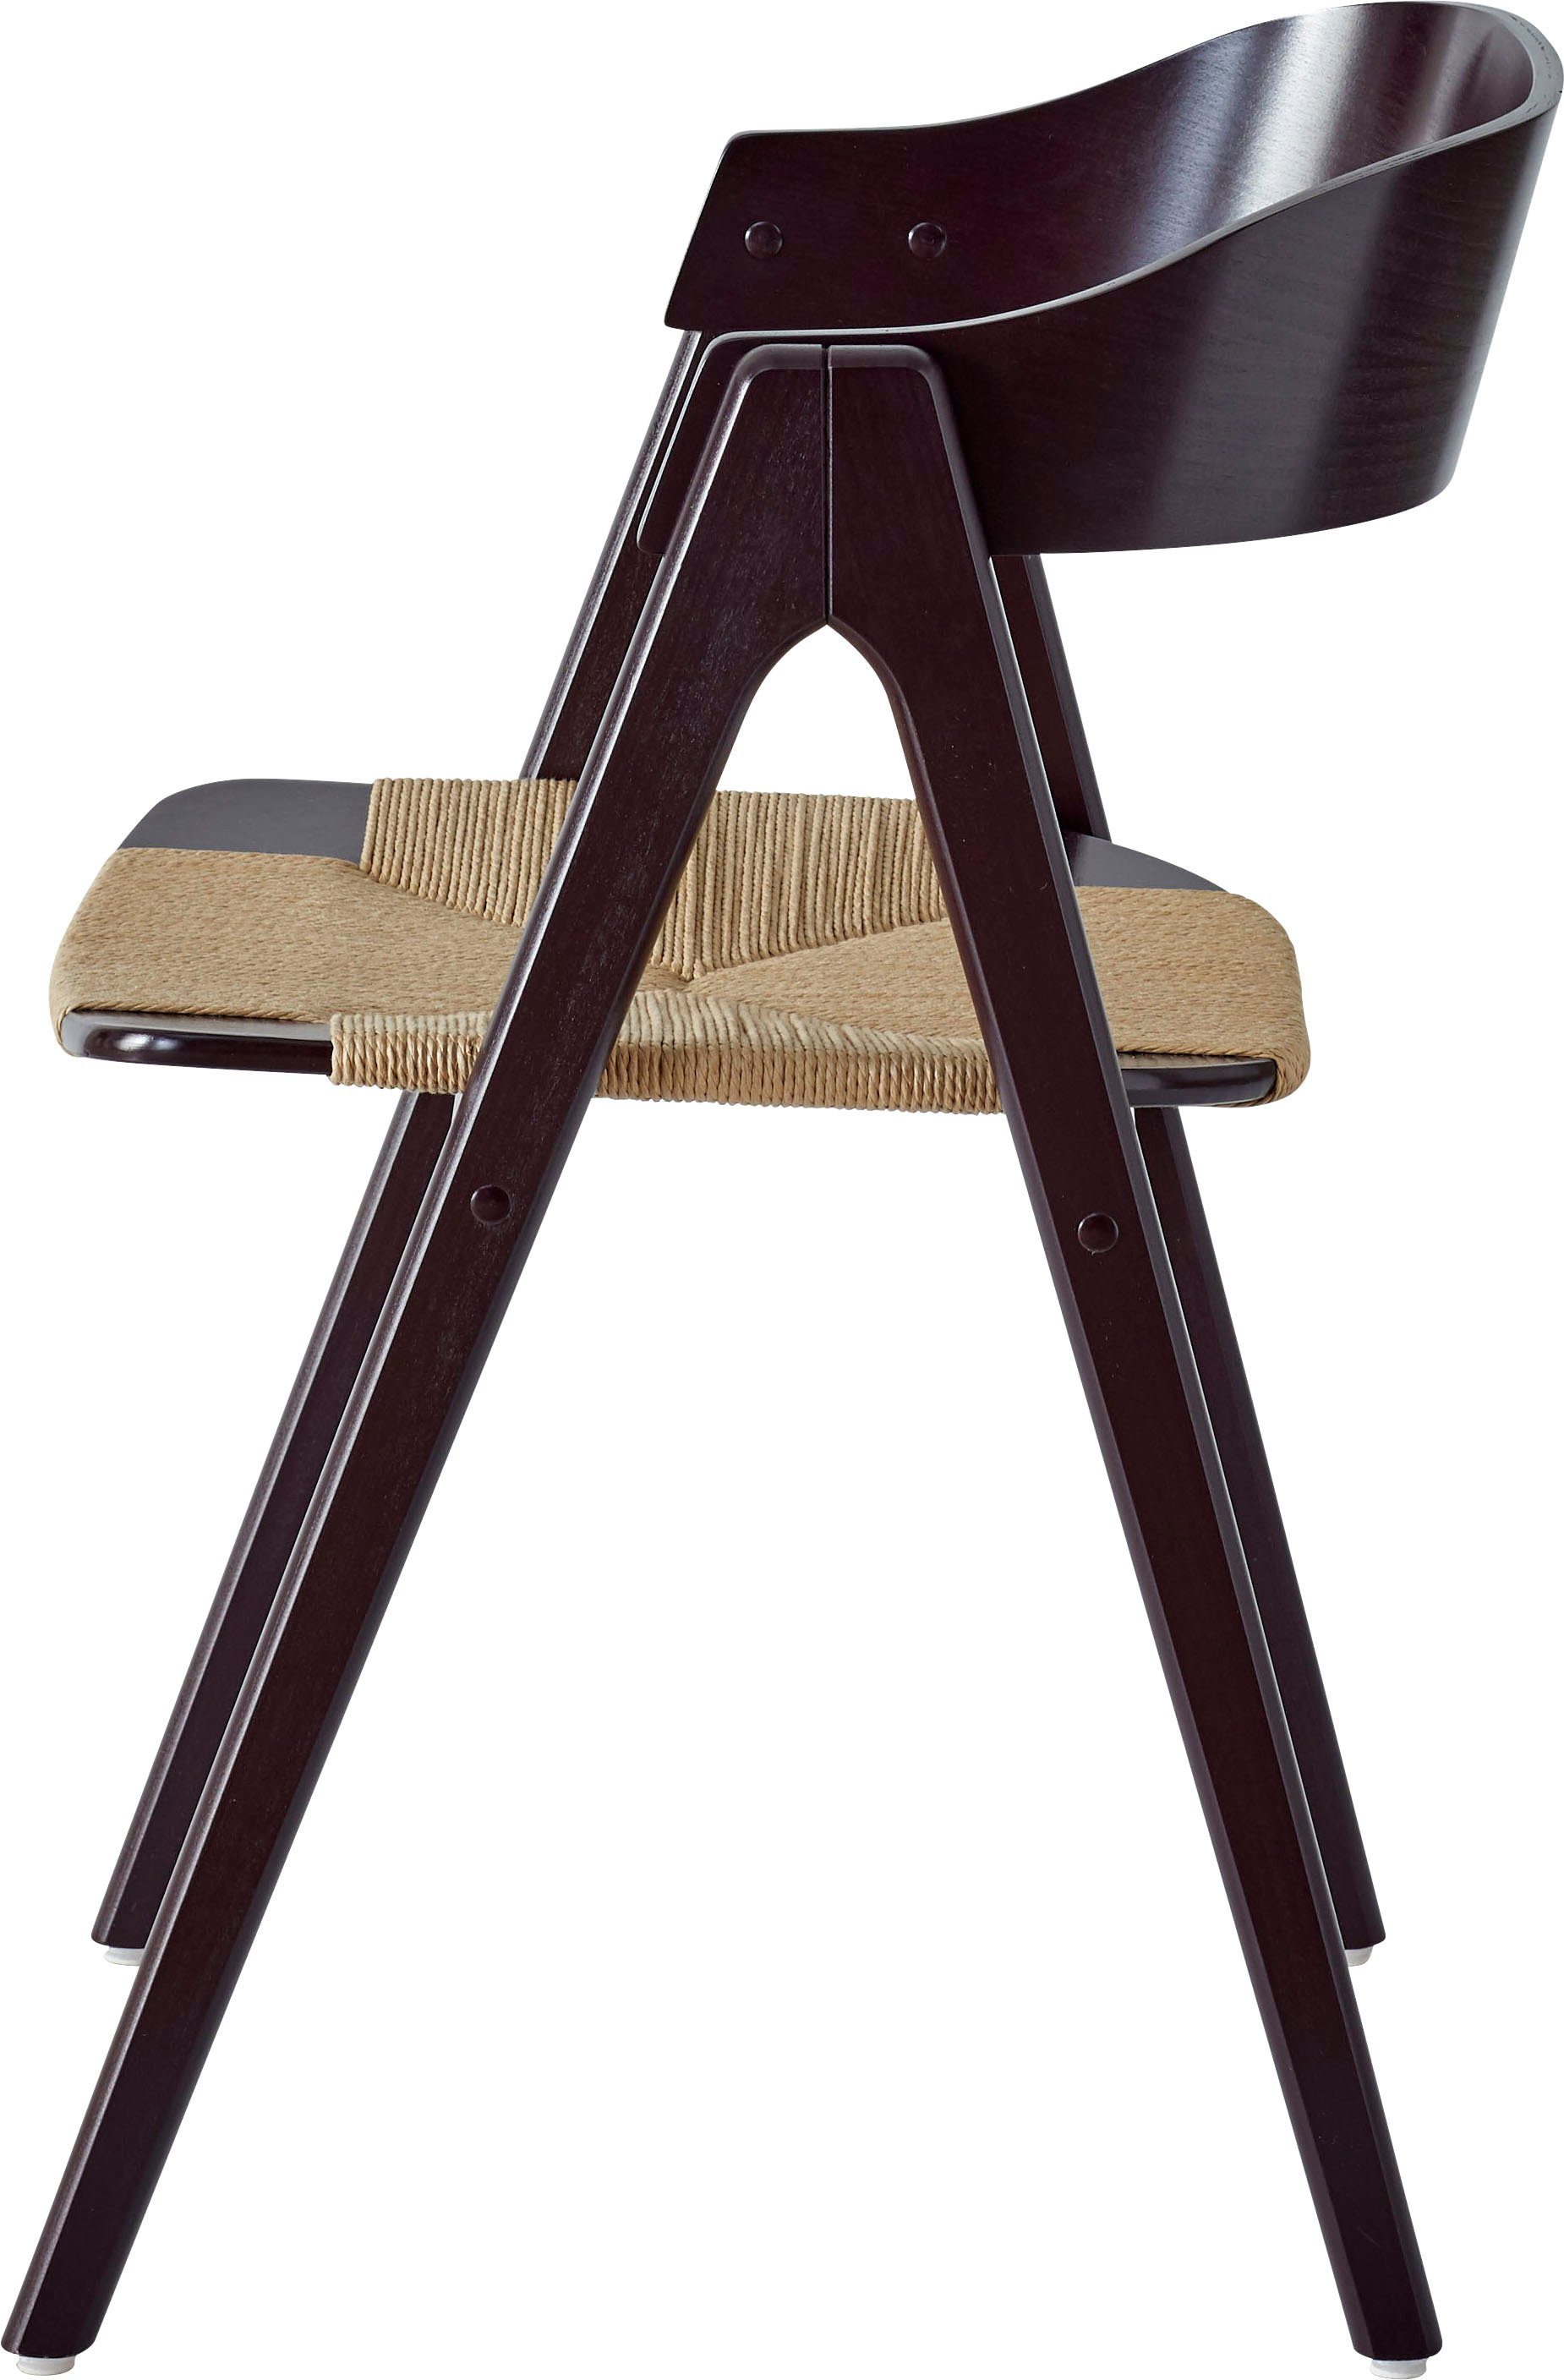 Hammel Furniture mit Holzstuhl Buche/Schwarz Flechtsitz, 2 Mette Farbvarianten Massivholz, Findahl by St), (Set, Hammel versch